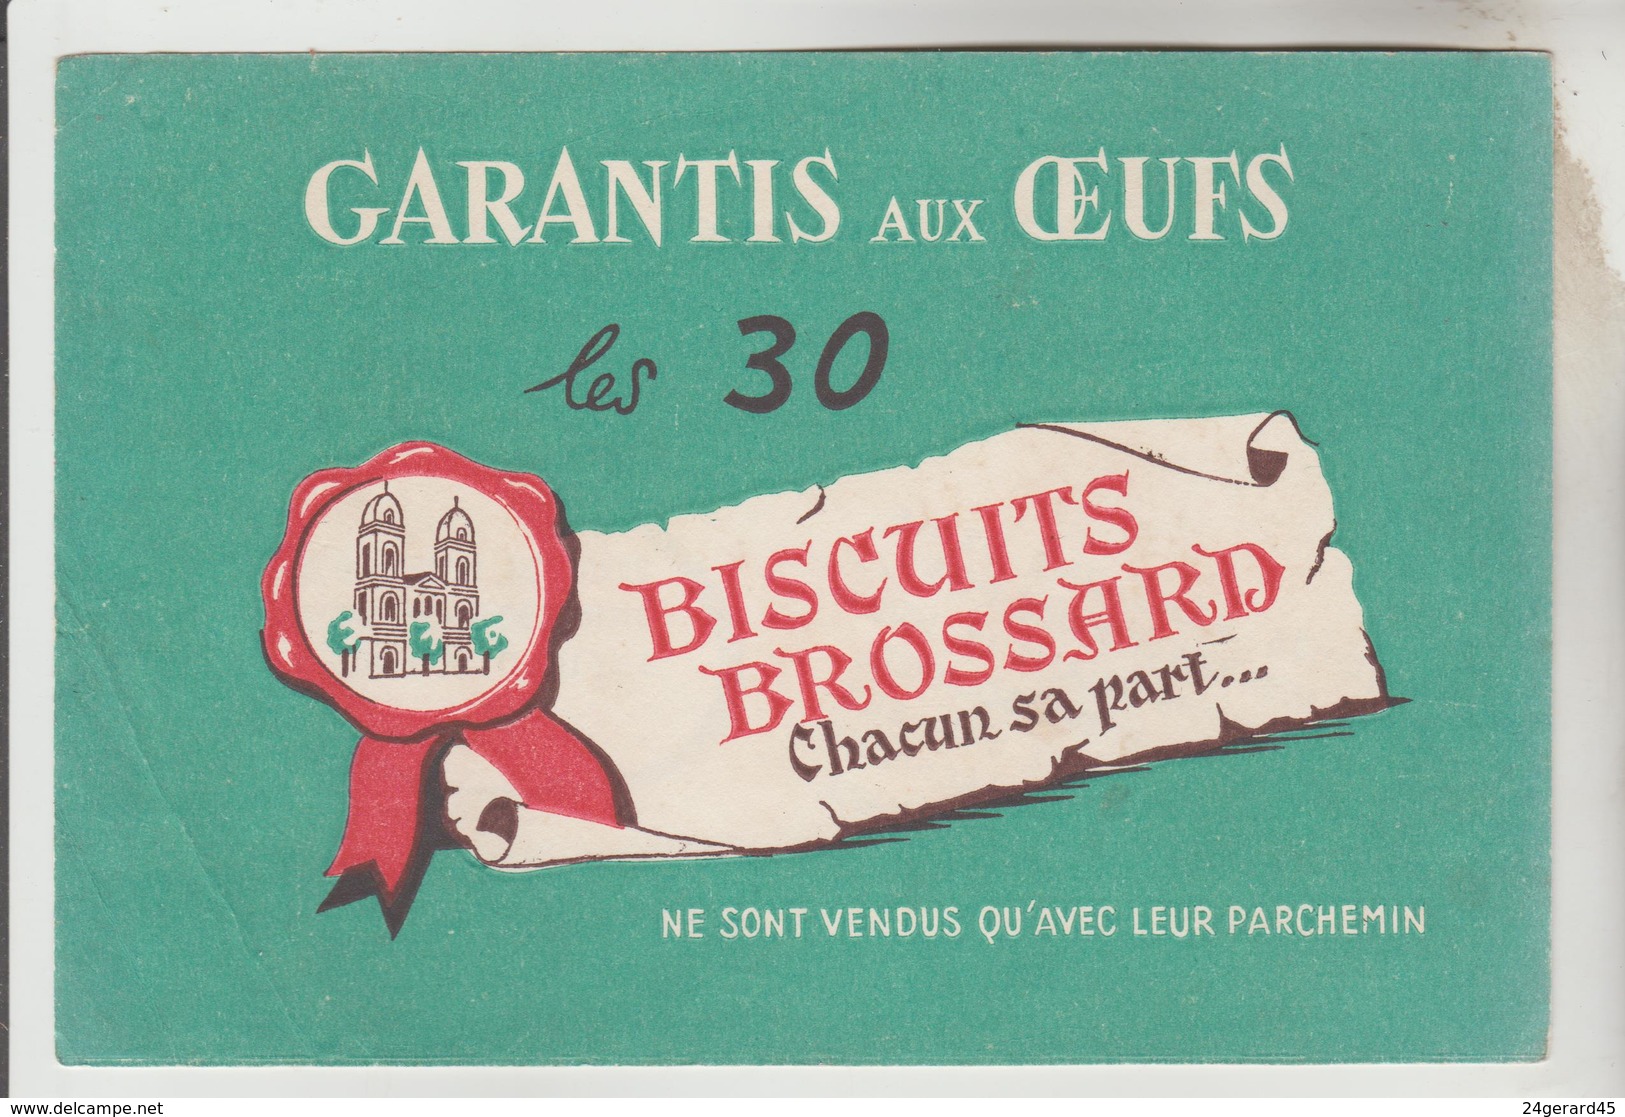 2 BUVARDS GATEAUX PAIN D'EPICES - Pain D'Epices BROCHET Frères, Biscuits BROSSARD St Jean D'Angély Charente Maritime - Moutardes